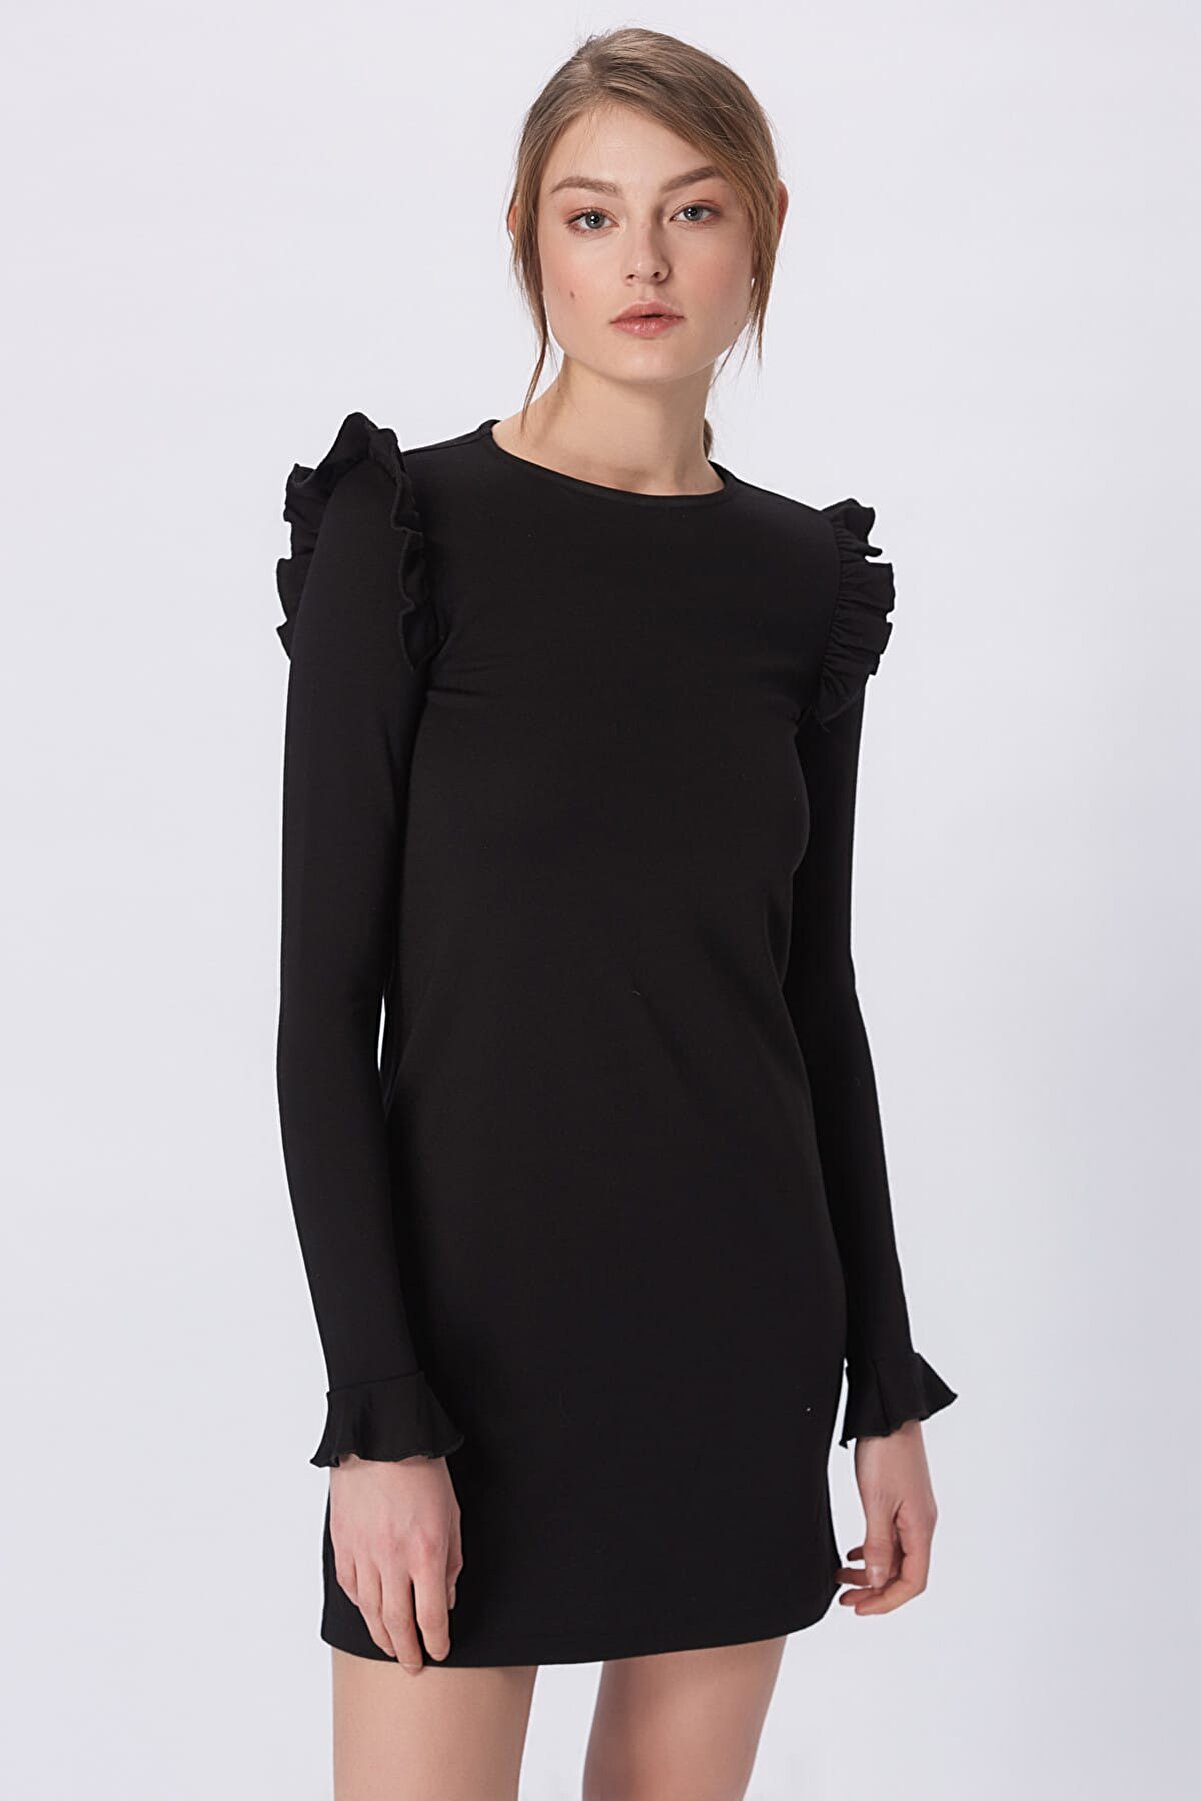 Bershka Kadın Siyah Elbise 2017-409-381